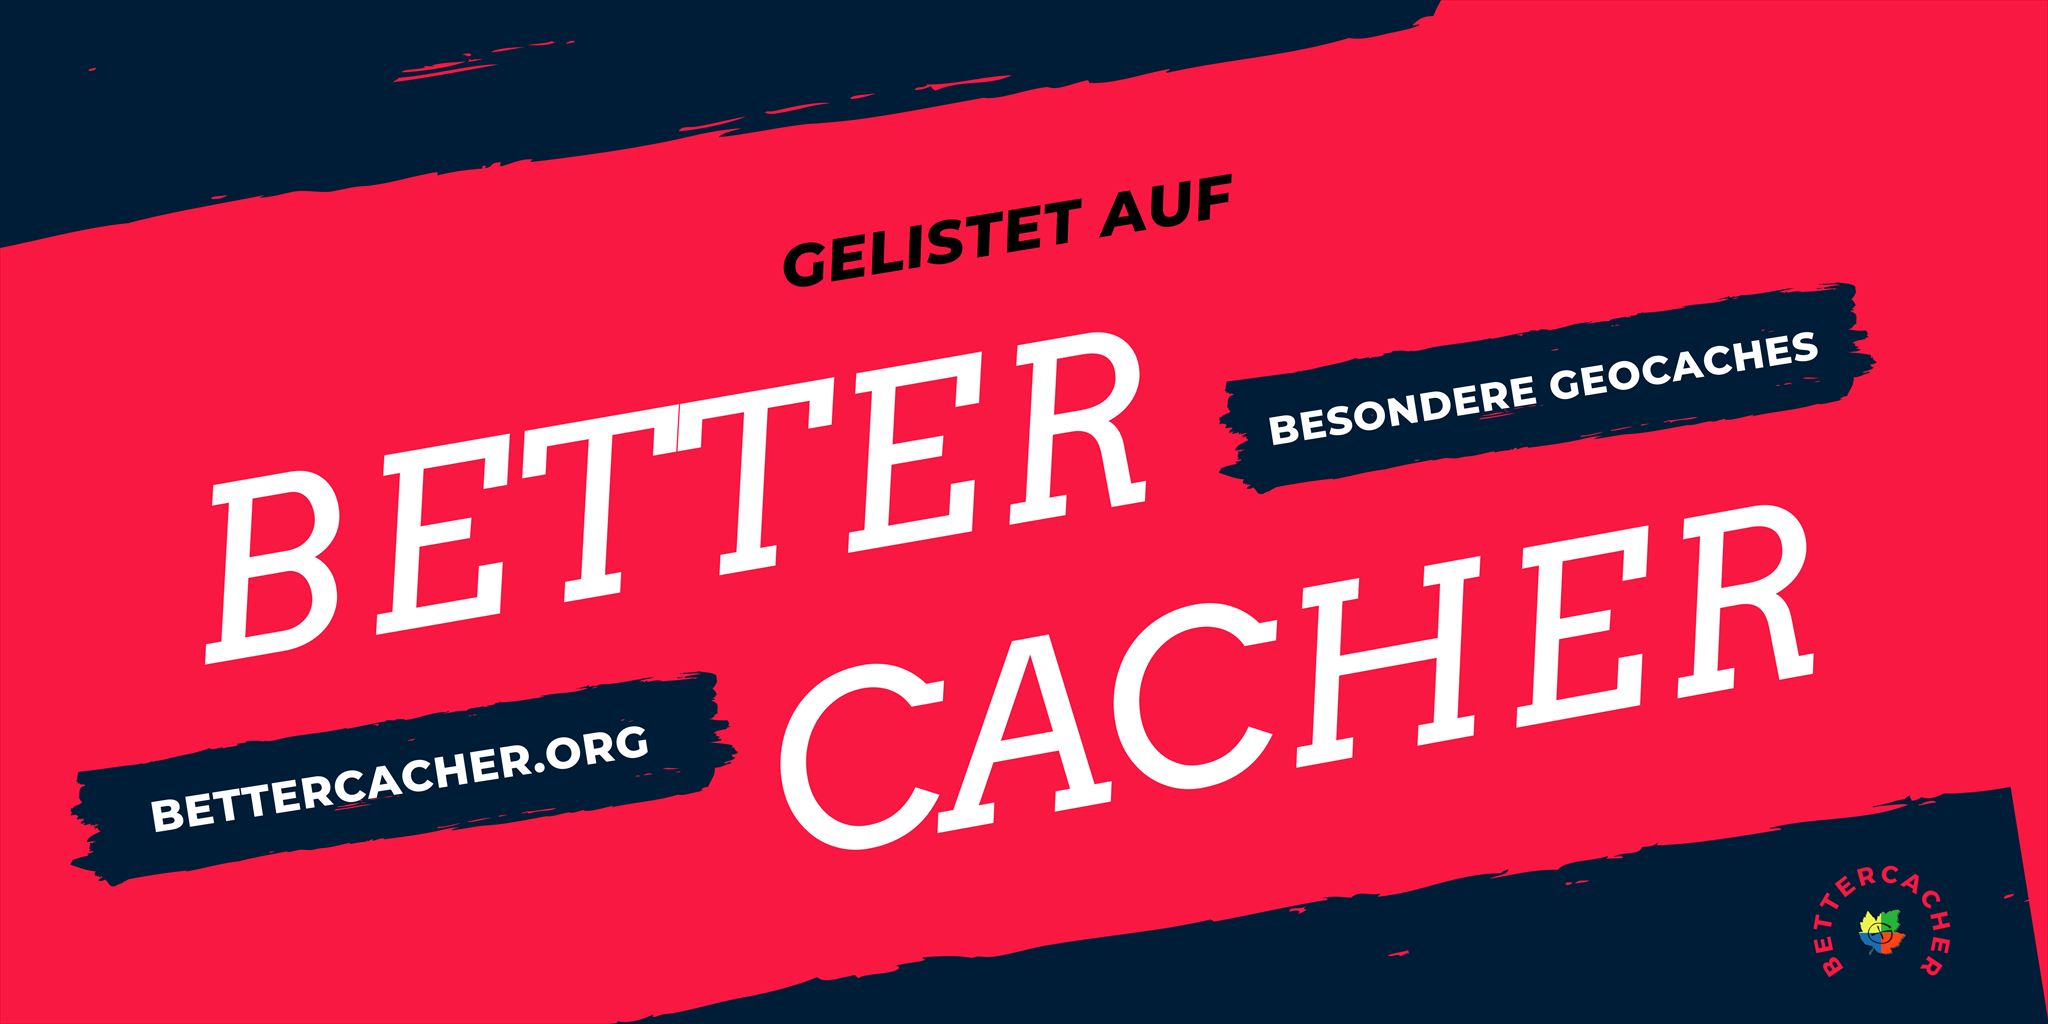 Dieser Cache ist auf BetterCacher.de gelistet.